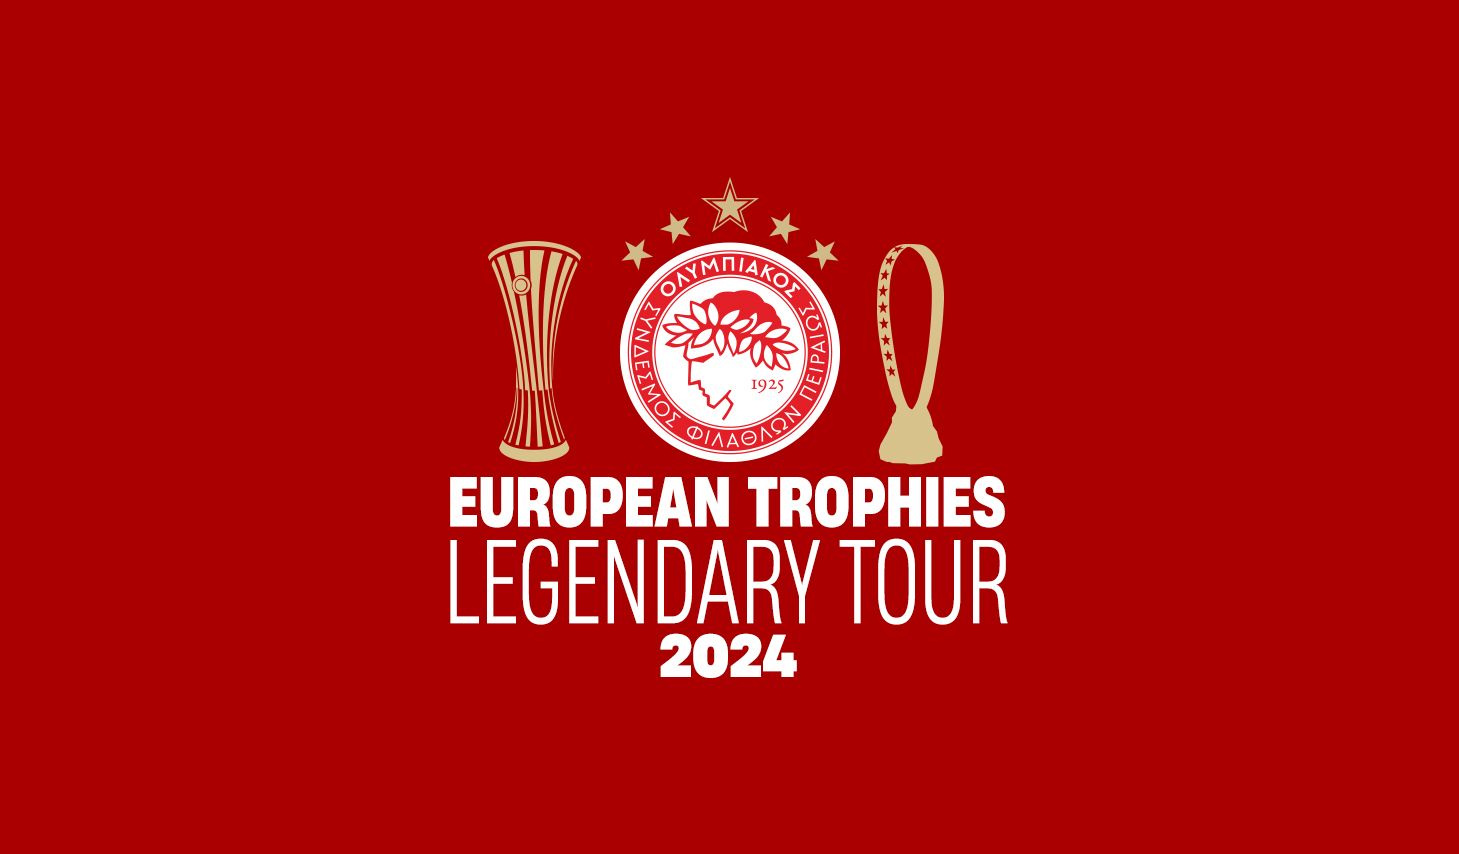 A legendary tour of European trophies